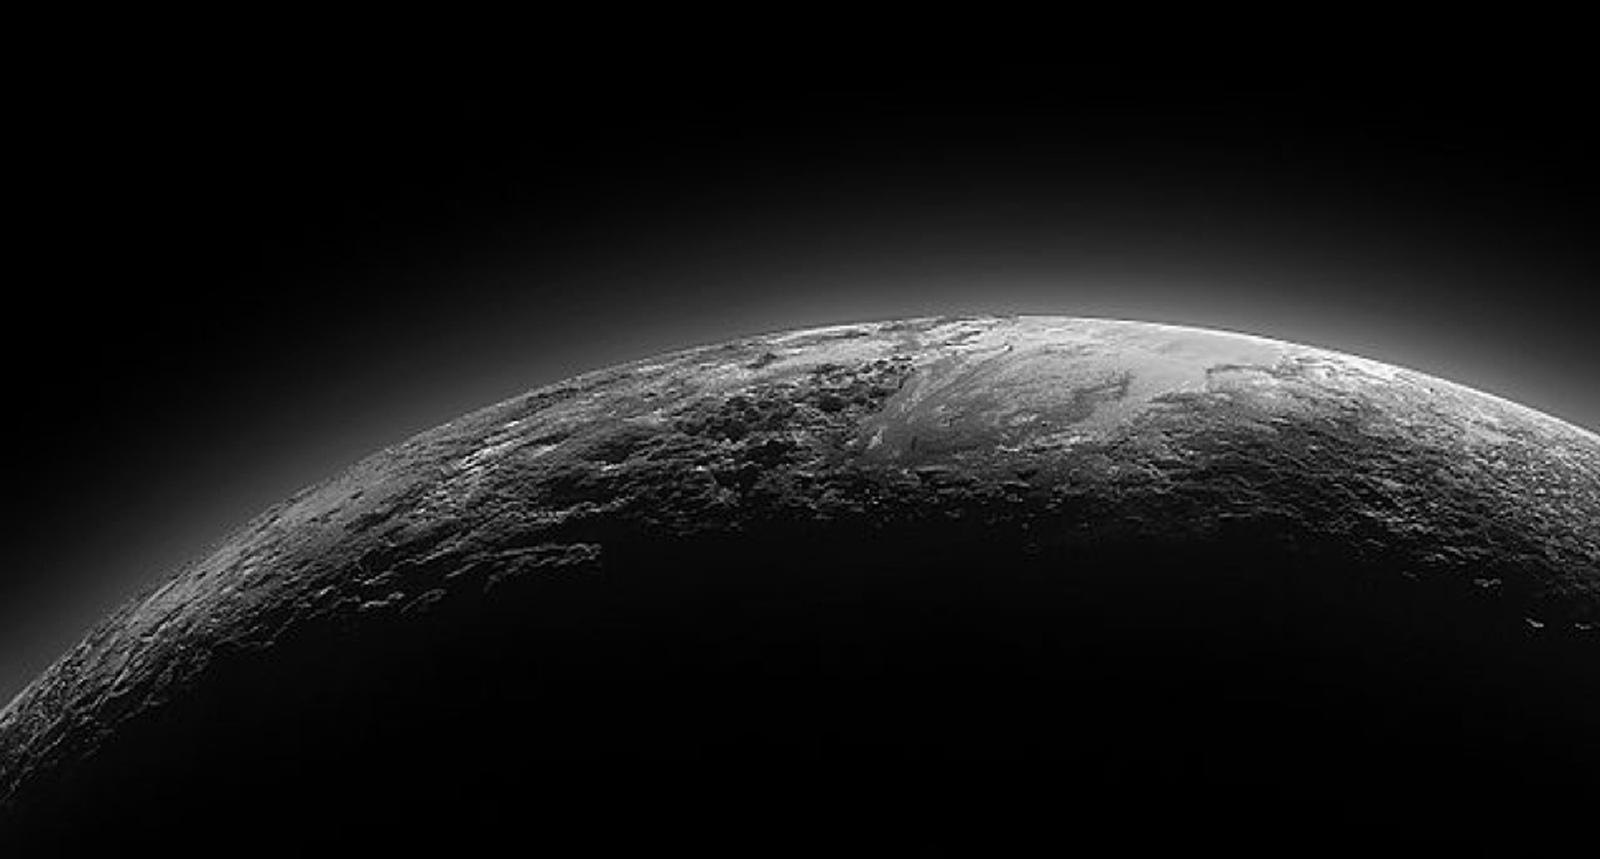 Dark image of Pluto's surface